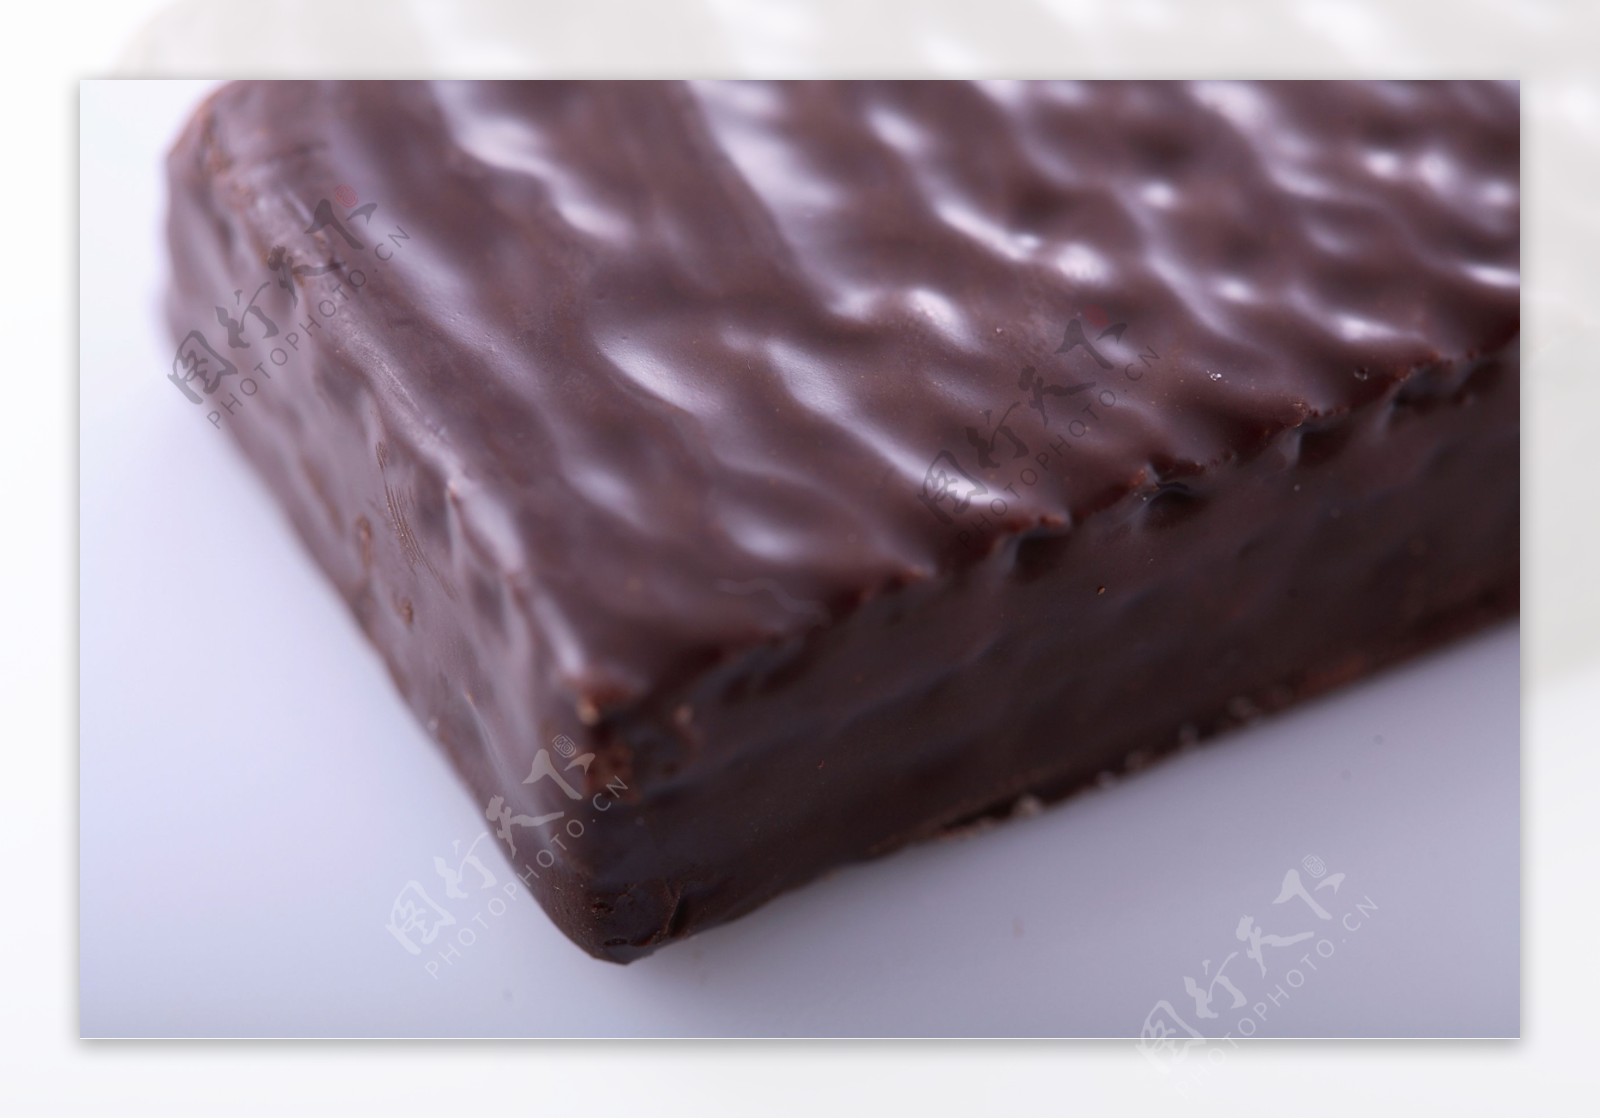 一块长方形巧克力图片